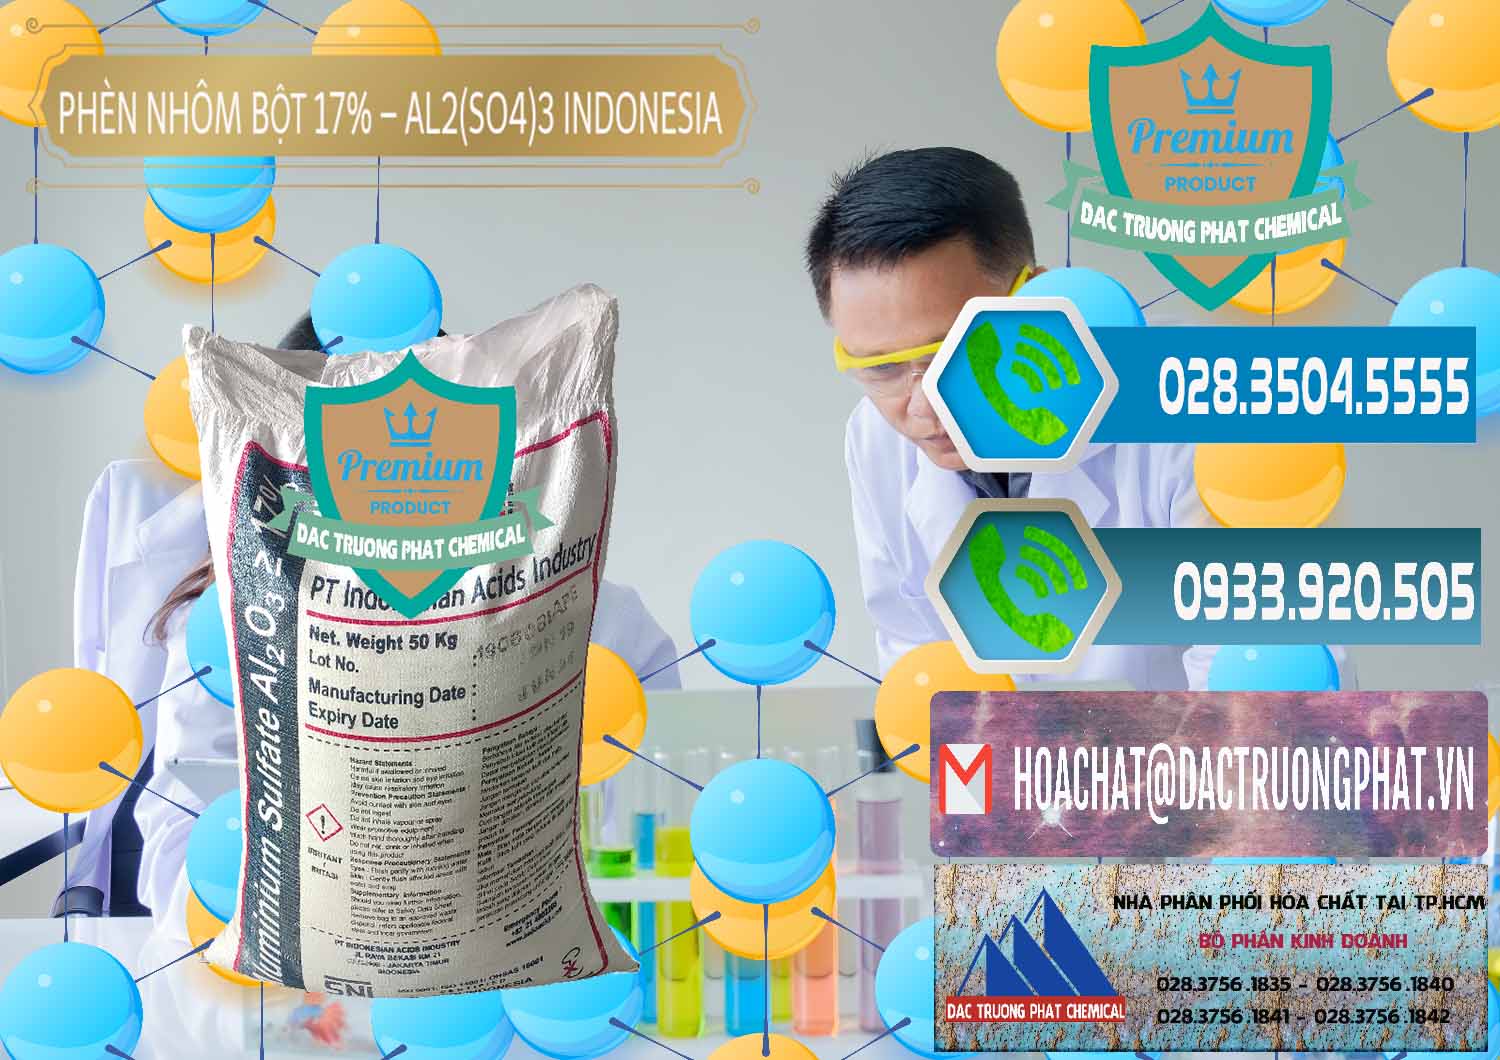 Nơi chuyên bán - cung cấp Phèn Nhôm Bột - Al2(SO4)3 17% bao 50kg Indonesia - 0112 - Đơn vị kinh doanh & phân phối hóa chất tại TP.HCM - congtyhoachat.net